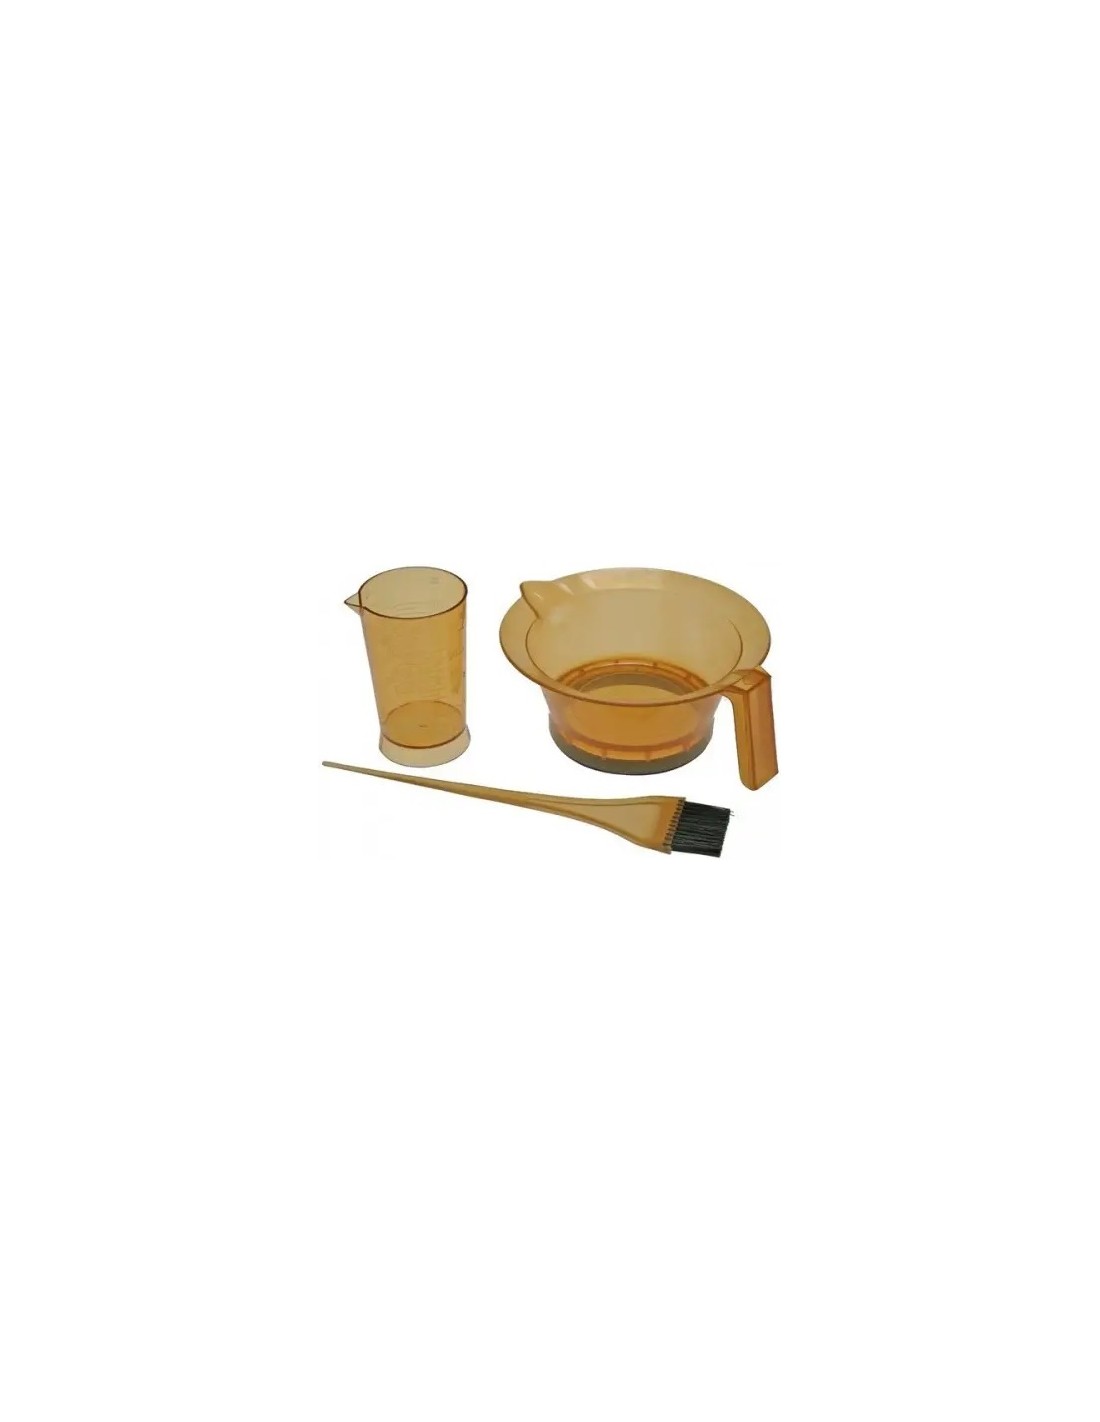 Hair dye mixing kit (bowl, brush, measuring cup), transparent orange